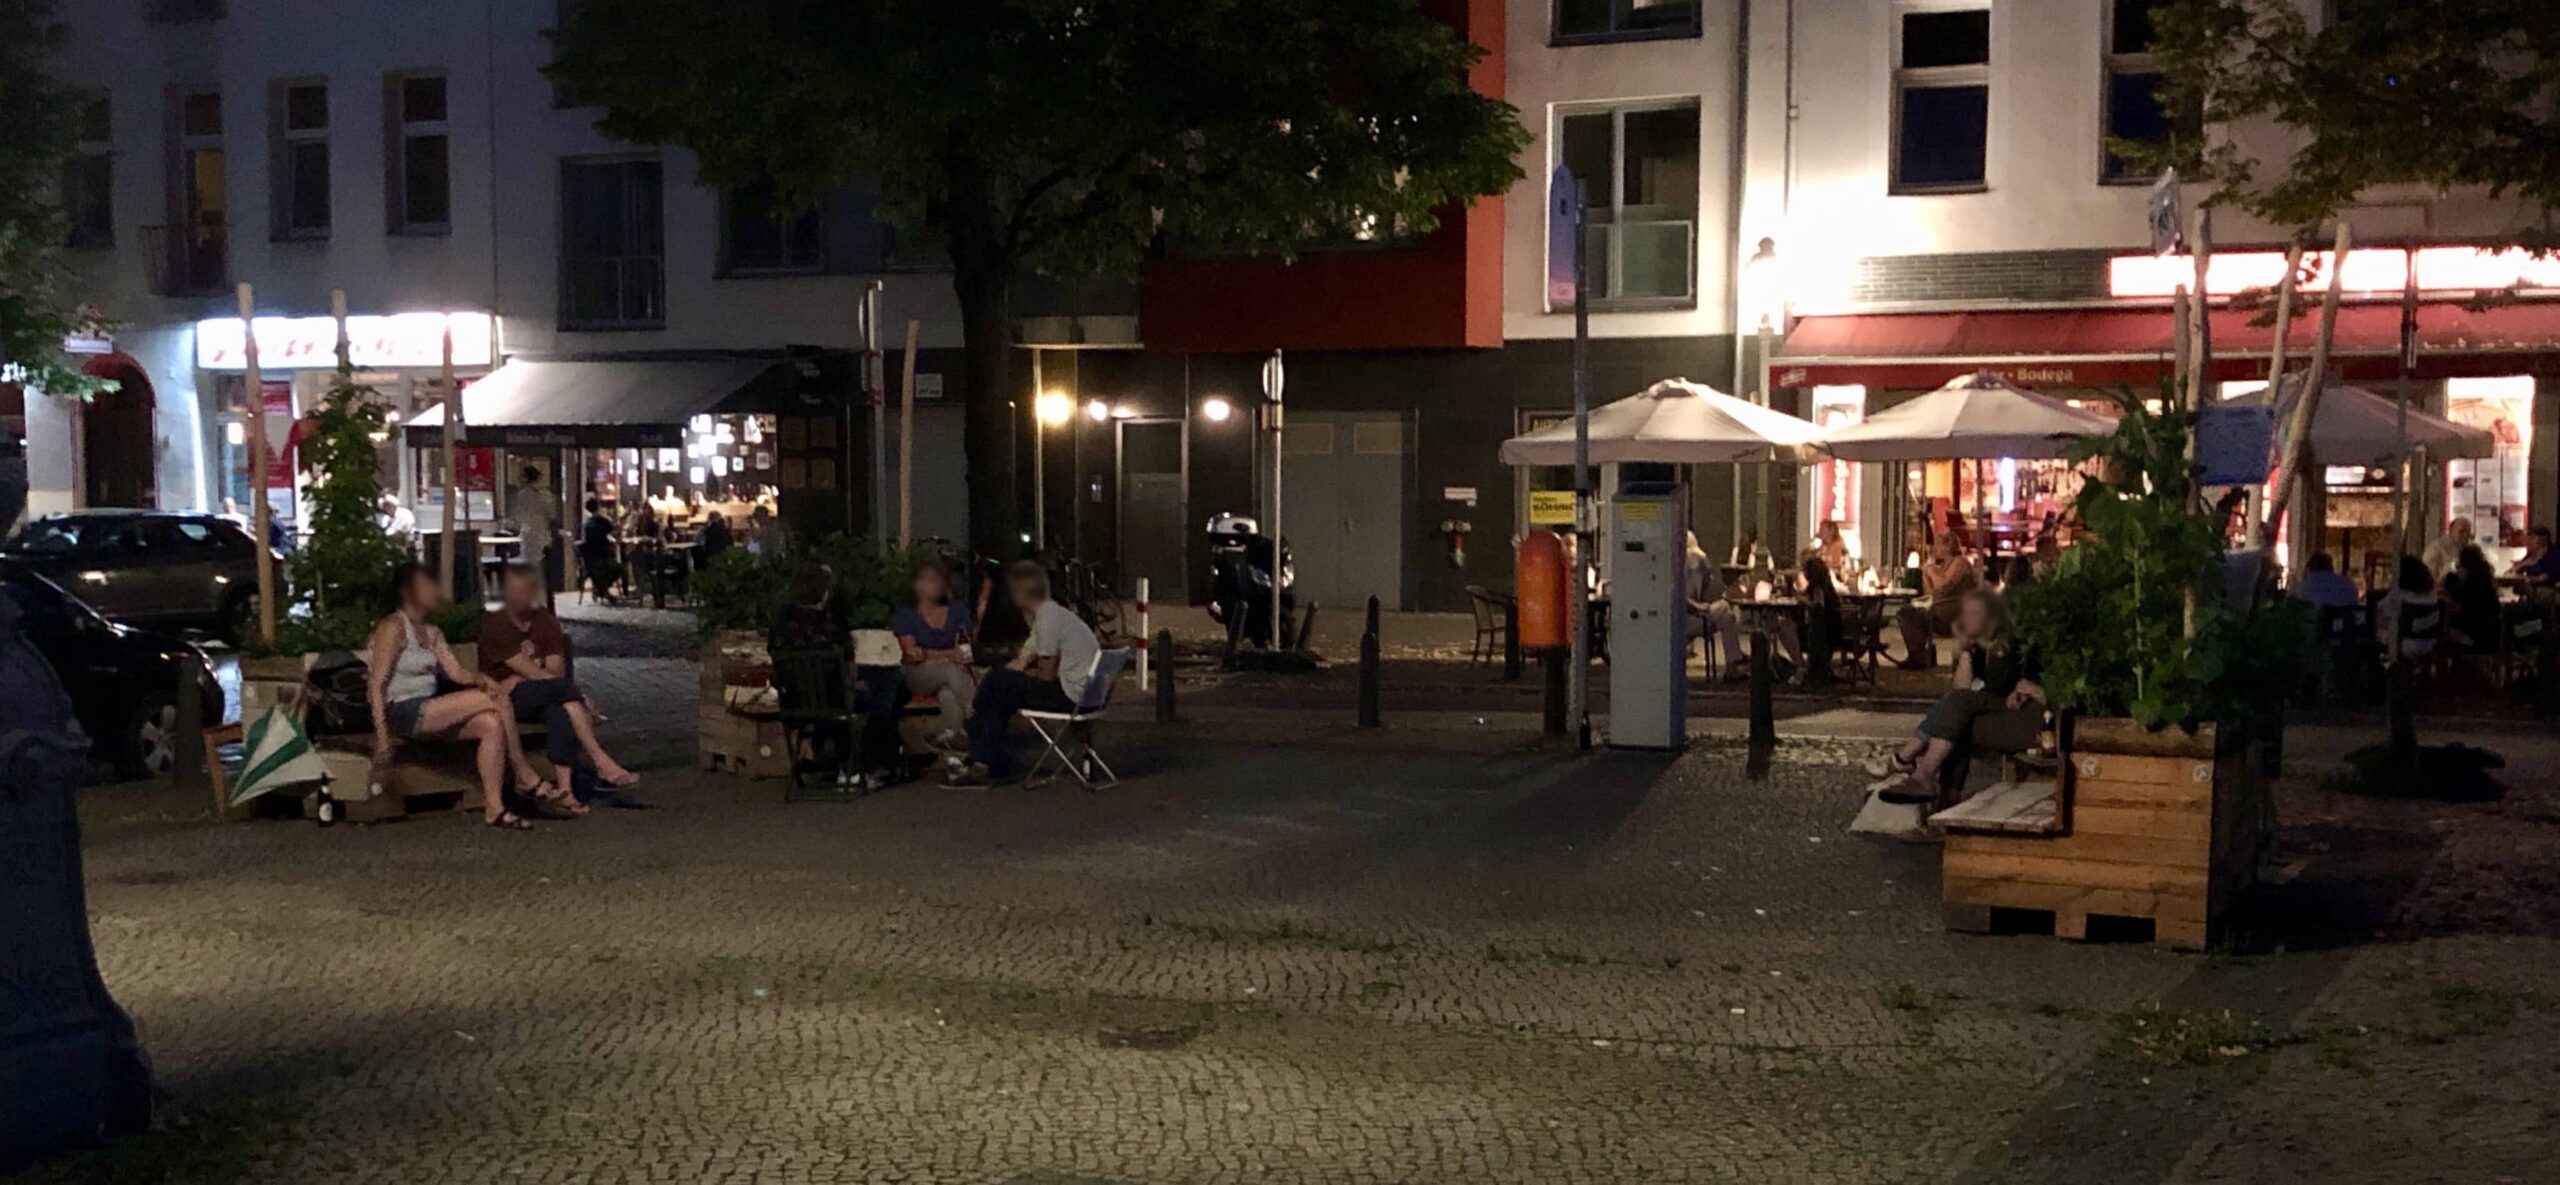 Treffpunkt Karl-August-Platz bei Nacht